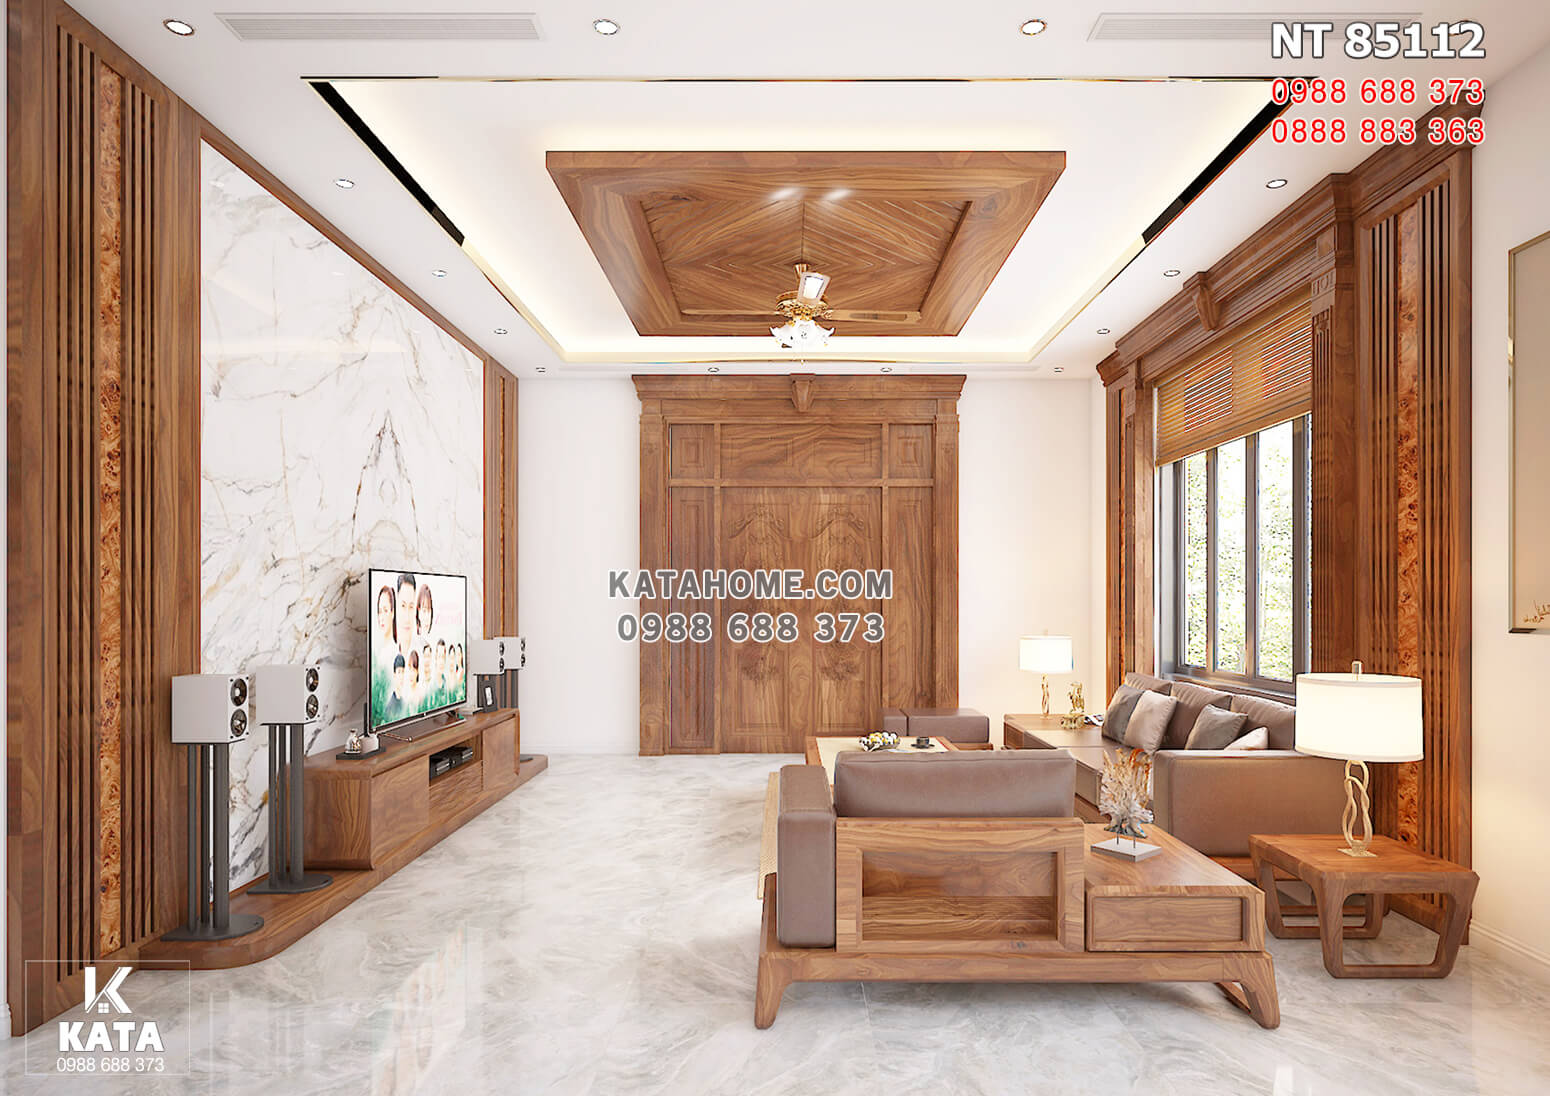 Hình ảnh: Thiết kế nội thất gỗ óc chó đẹp hiện đại